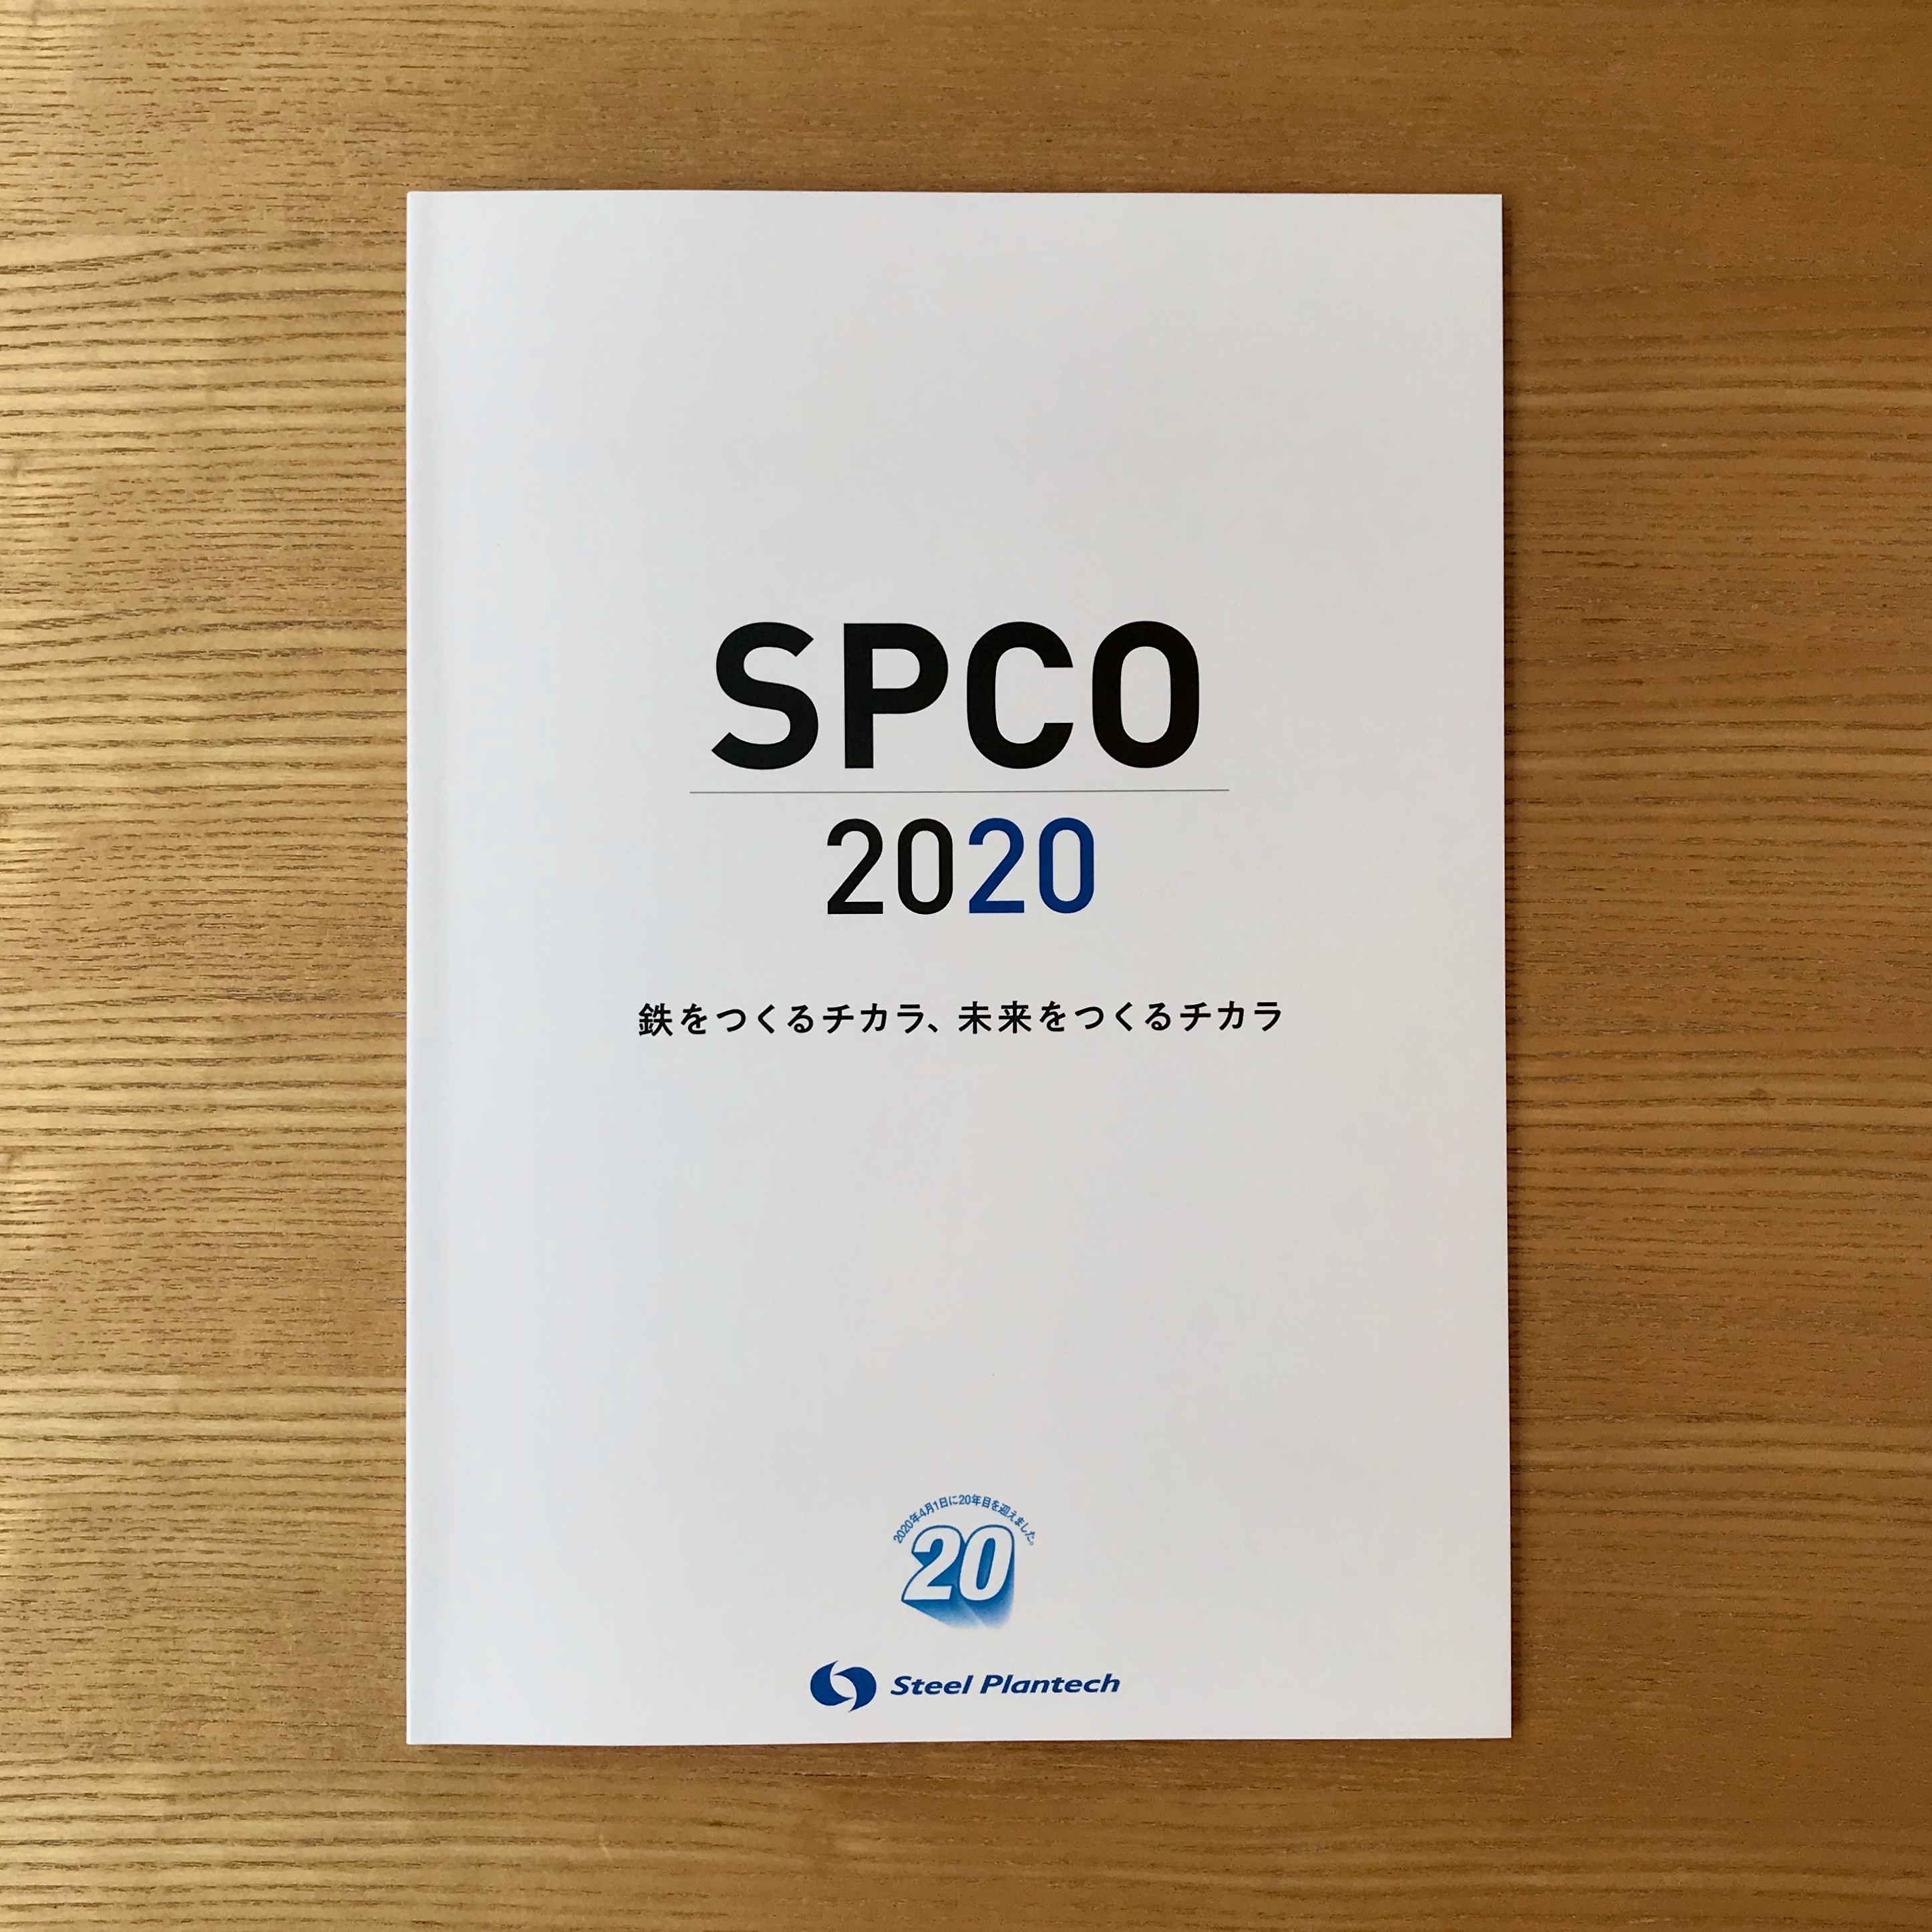 SPCO 2020